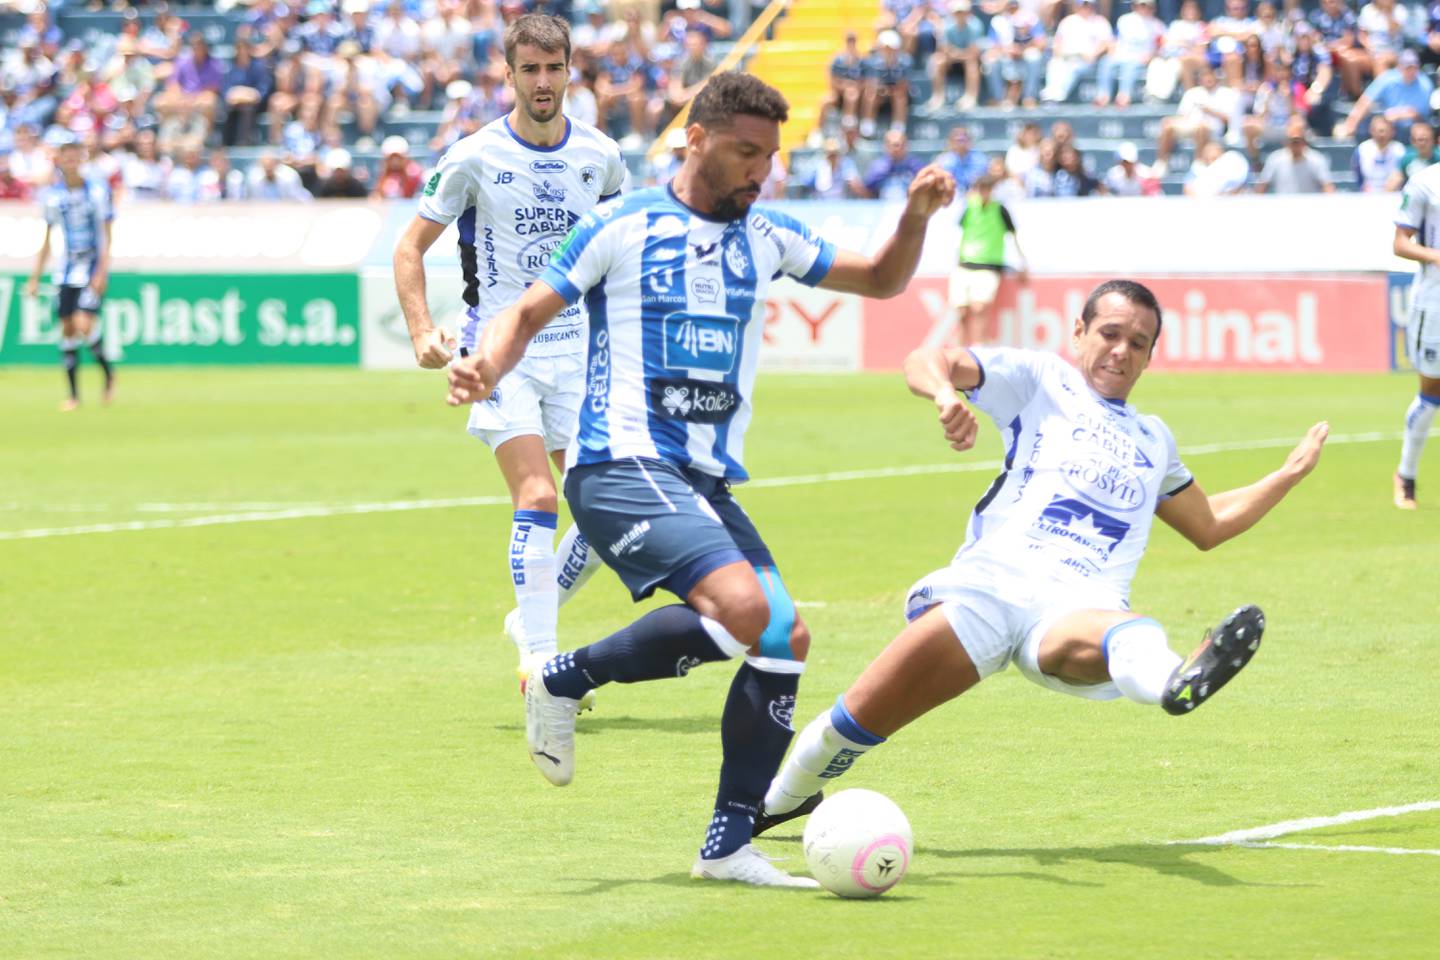 El atacante de Cartaginés Marcel Hernández (izquierda) falló un penal, pero se repuso y anotó un gol. El defensa de Grecia, Mario De Luna fue quien cometió la falta dentro del área.